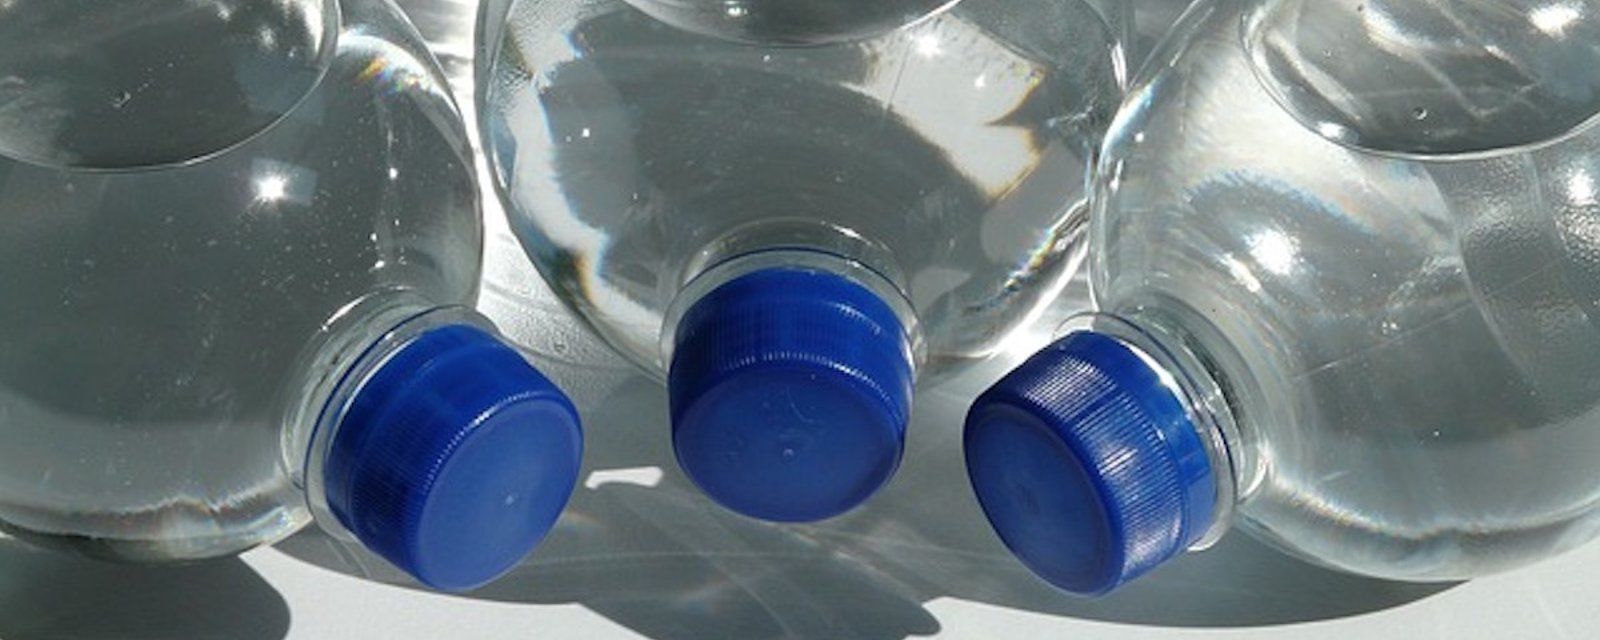 Voici pourquoi on ne devrait pas réutiliser une vieille bouteille d’eau en plastique